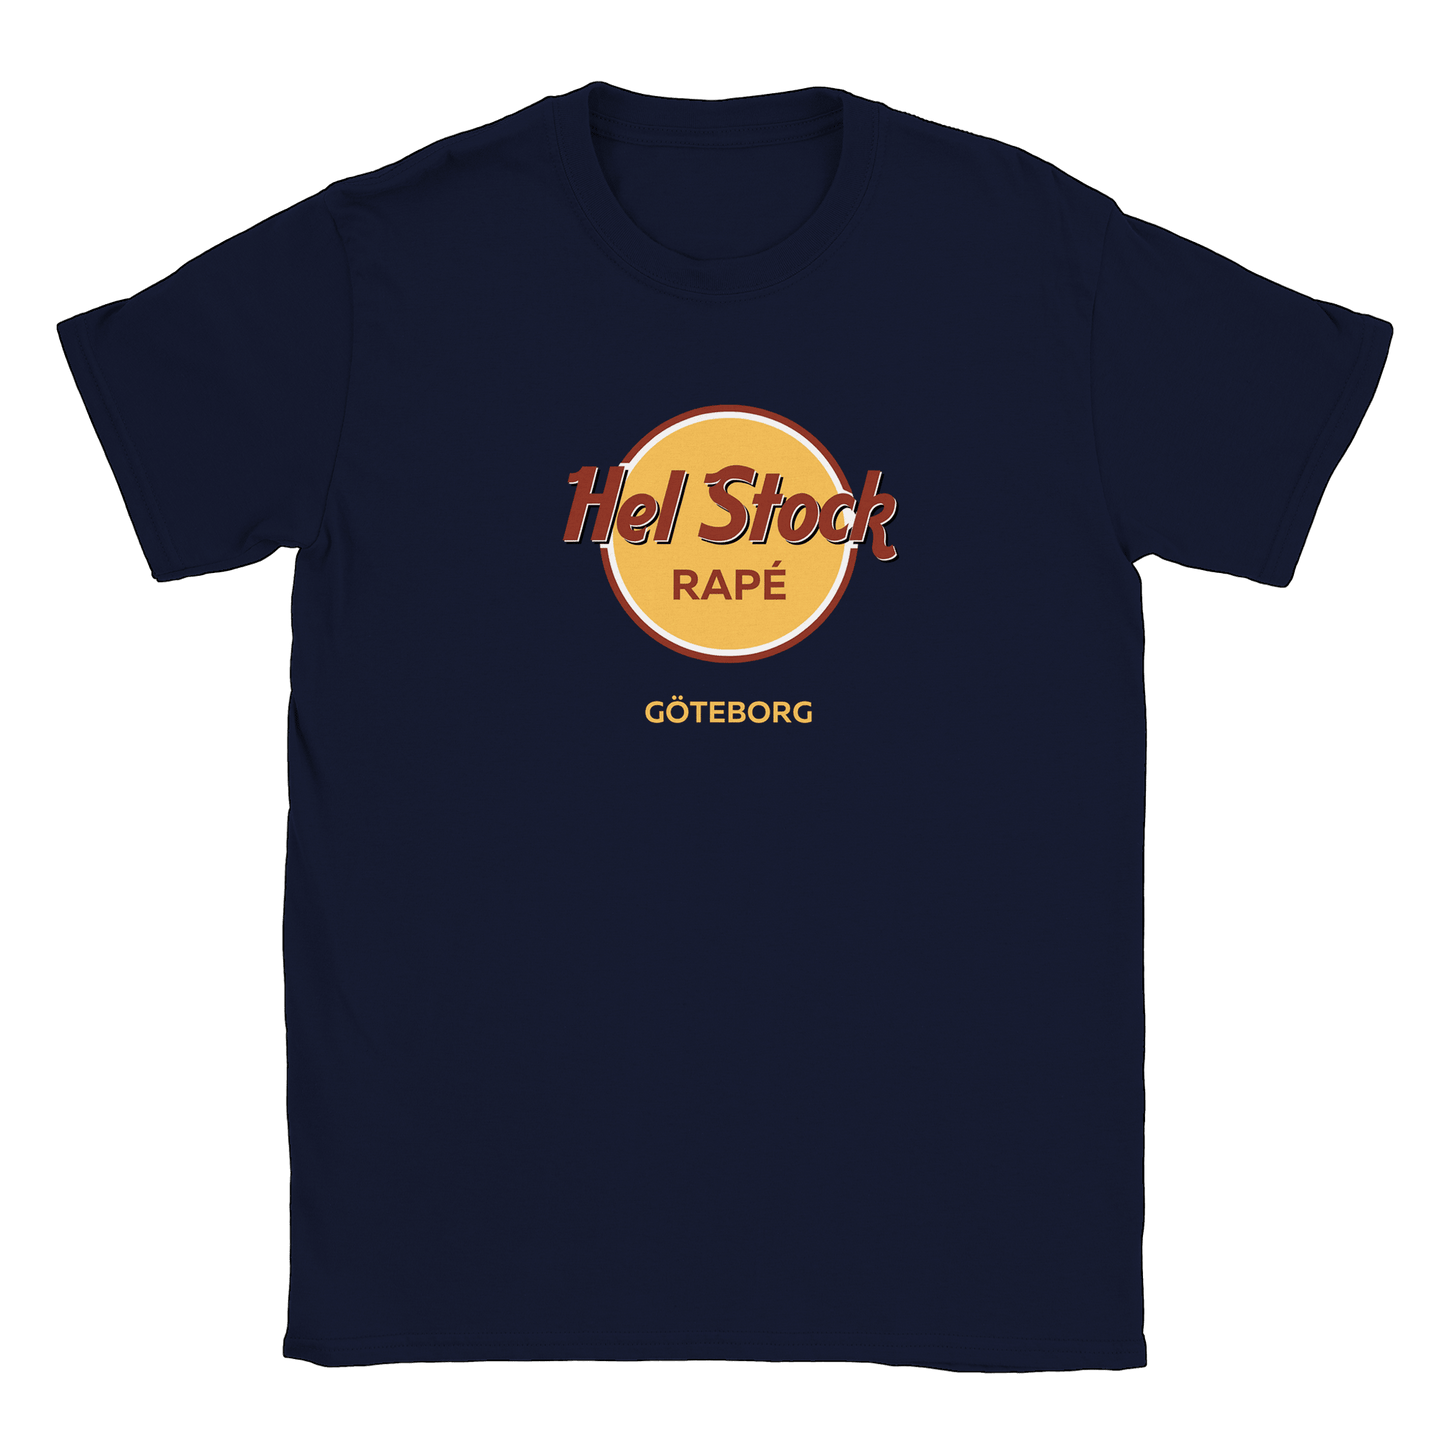 Hel Stock Rapé - T-shirt Navy